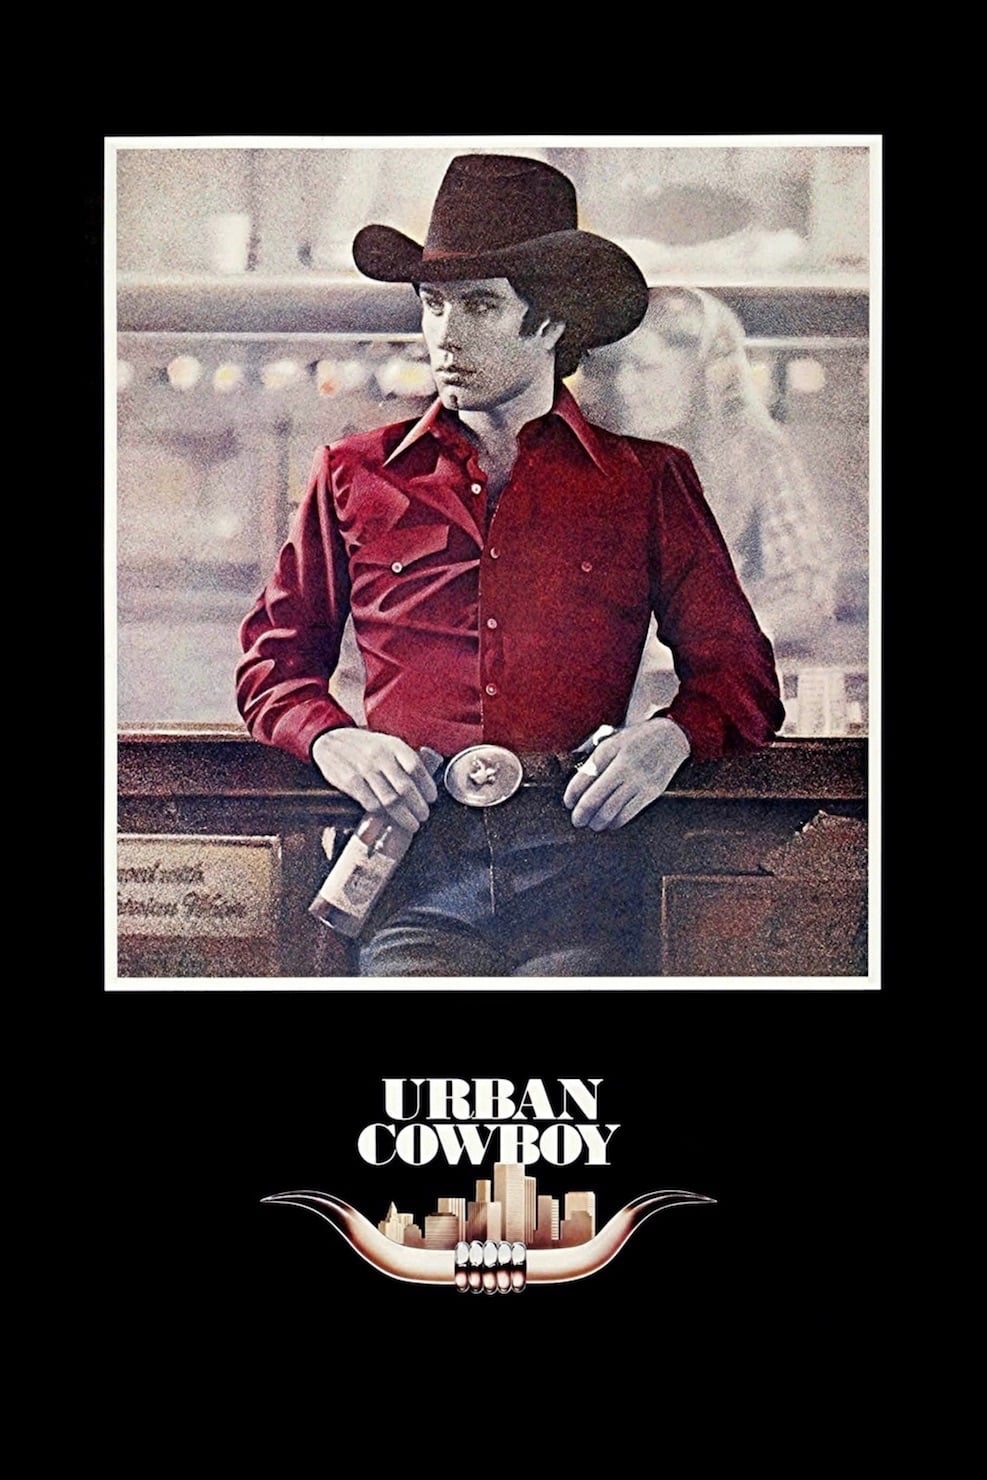 Plakat von "Urban Cowboy"